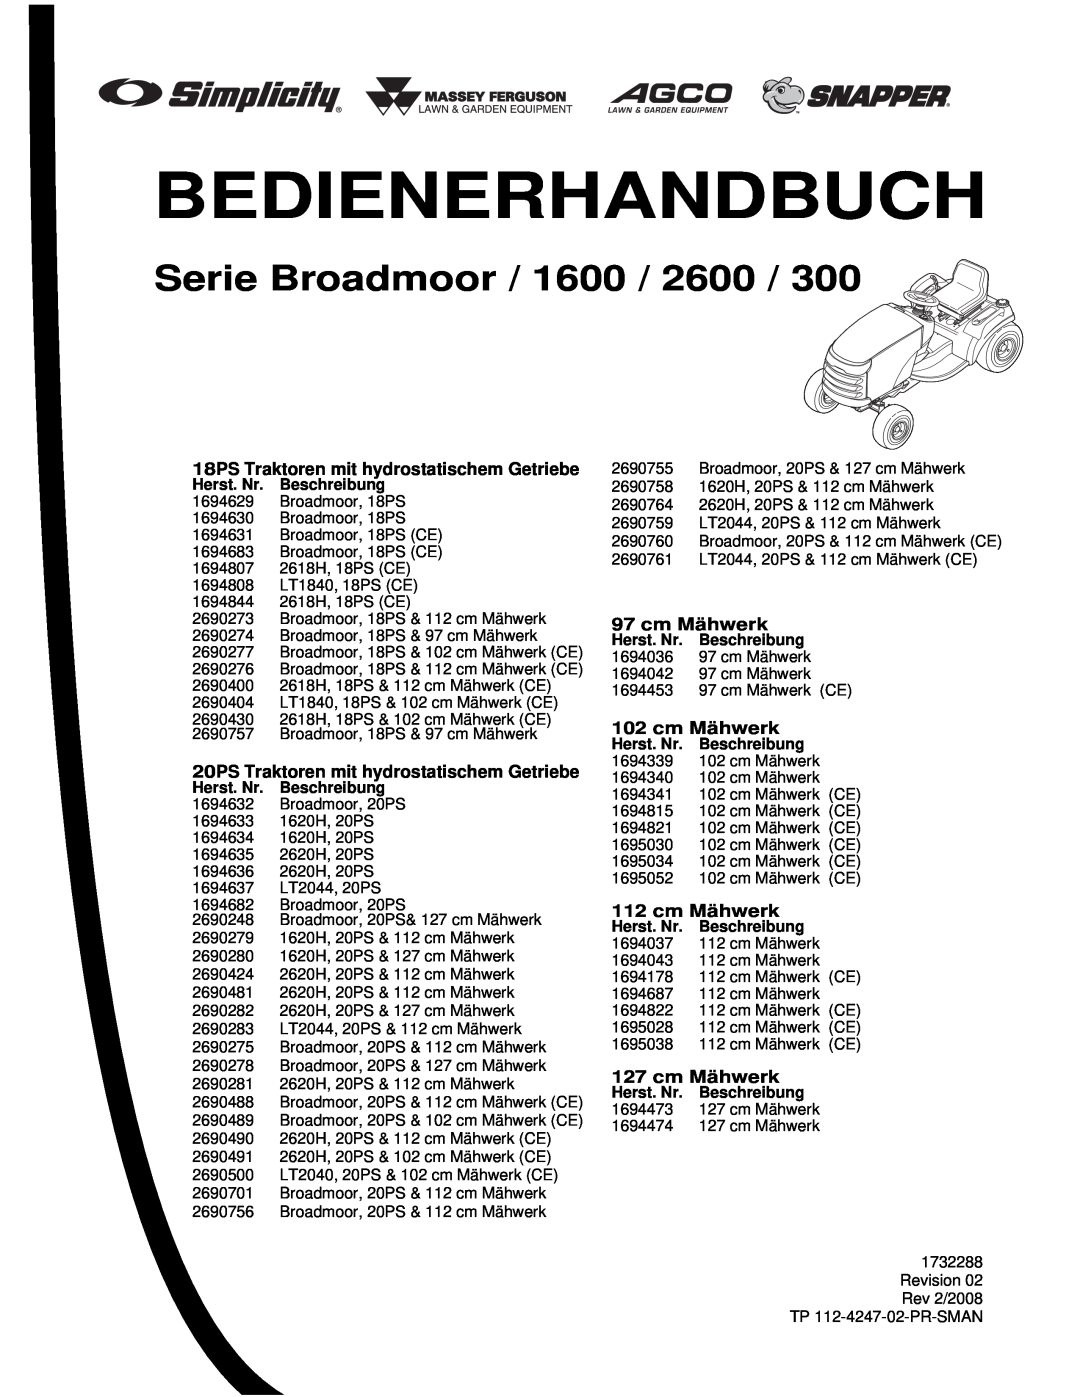 Simplicity 300 manual Bedienerhandbuch, Serie Broadmoor / 1600 / 2600, 18PS Traktoren mit hydrostatischem Getriebe 